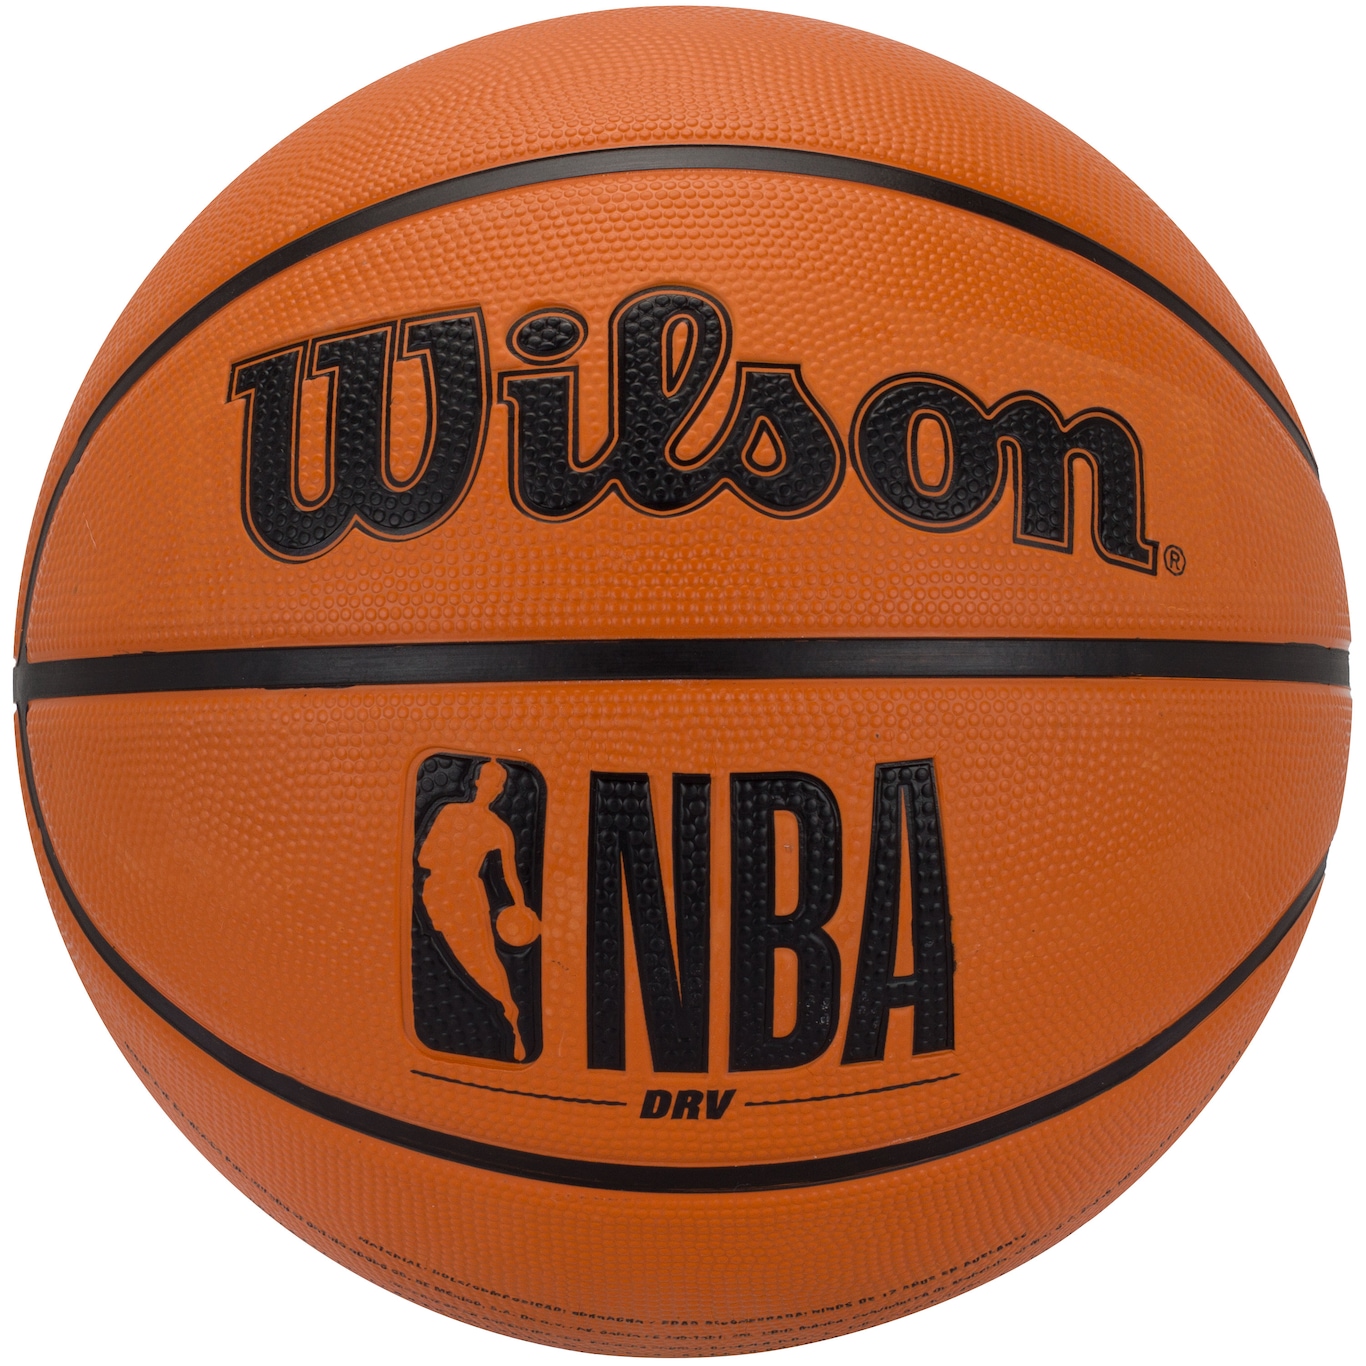 Bola de Basquete Clutch Basketball Cinza e Azul - Wilson